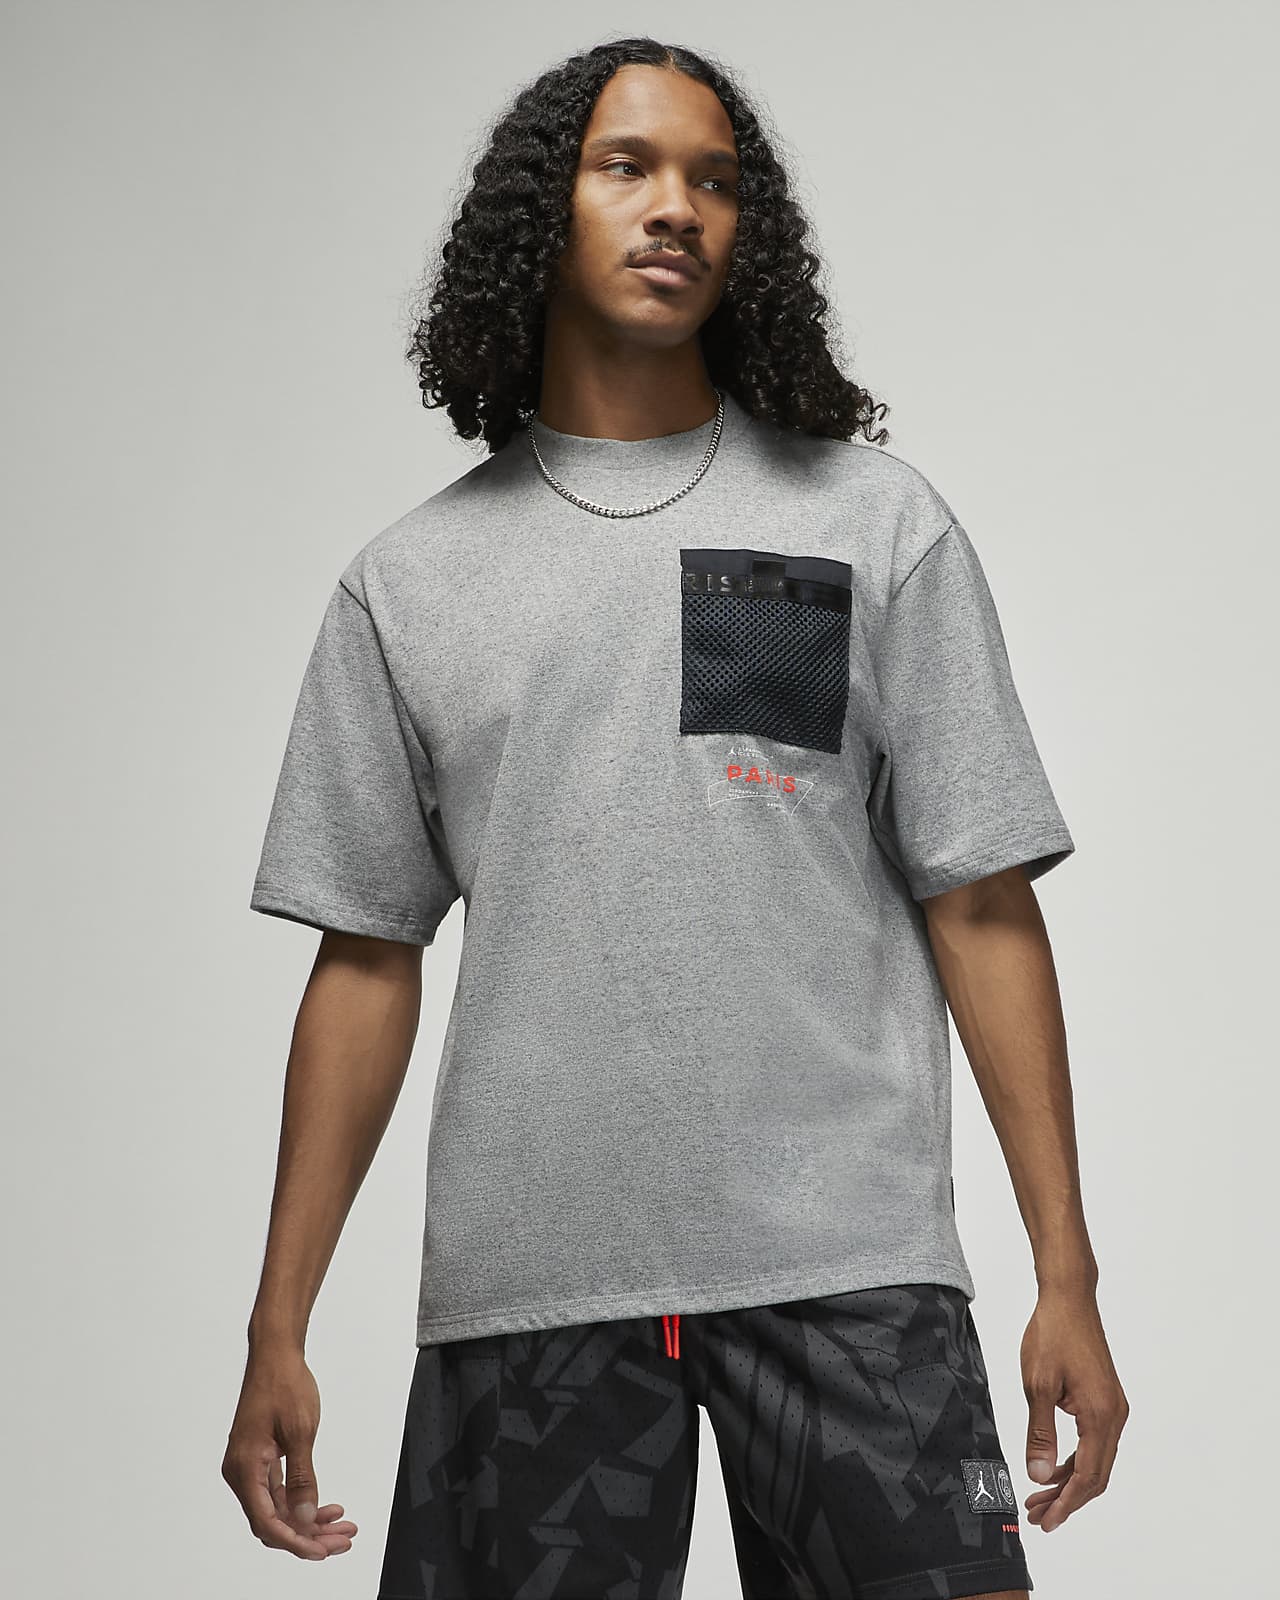 Machtigen wacht Op te slaan Paris Saint-Germain Men's Pocket T-Shirt. Nike.com